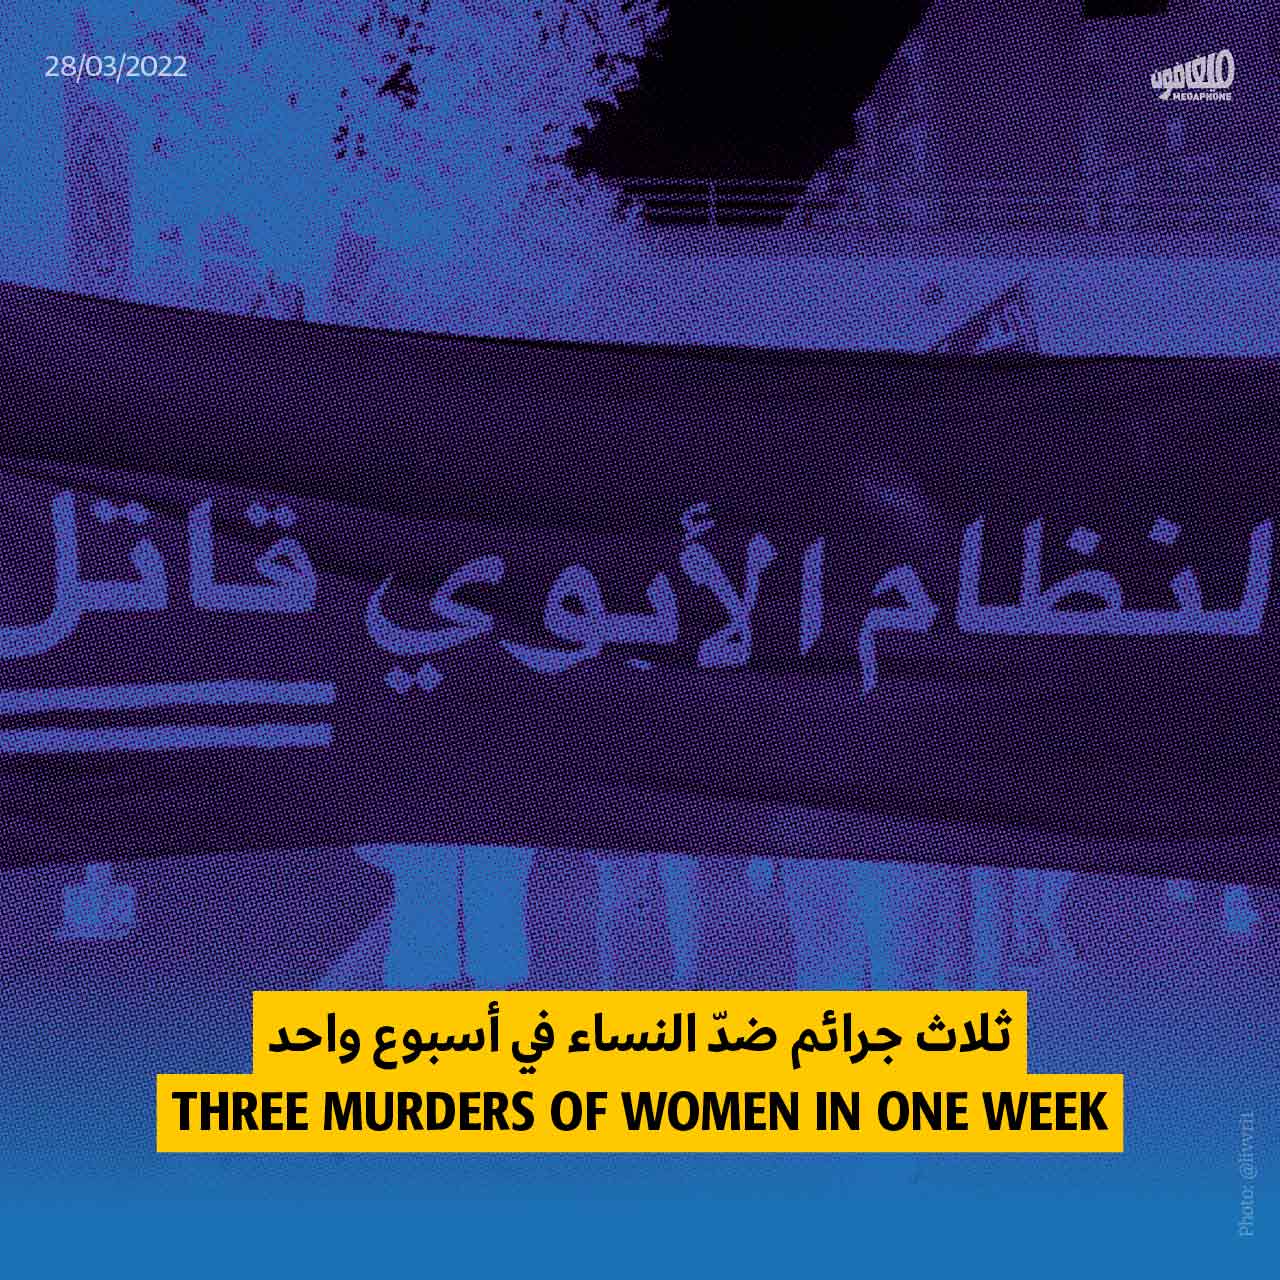 ثلاث جرائم ضدّ النساء في أسبوعٍ واحد